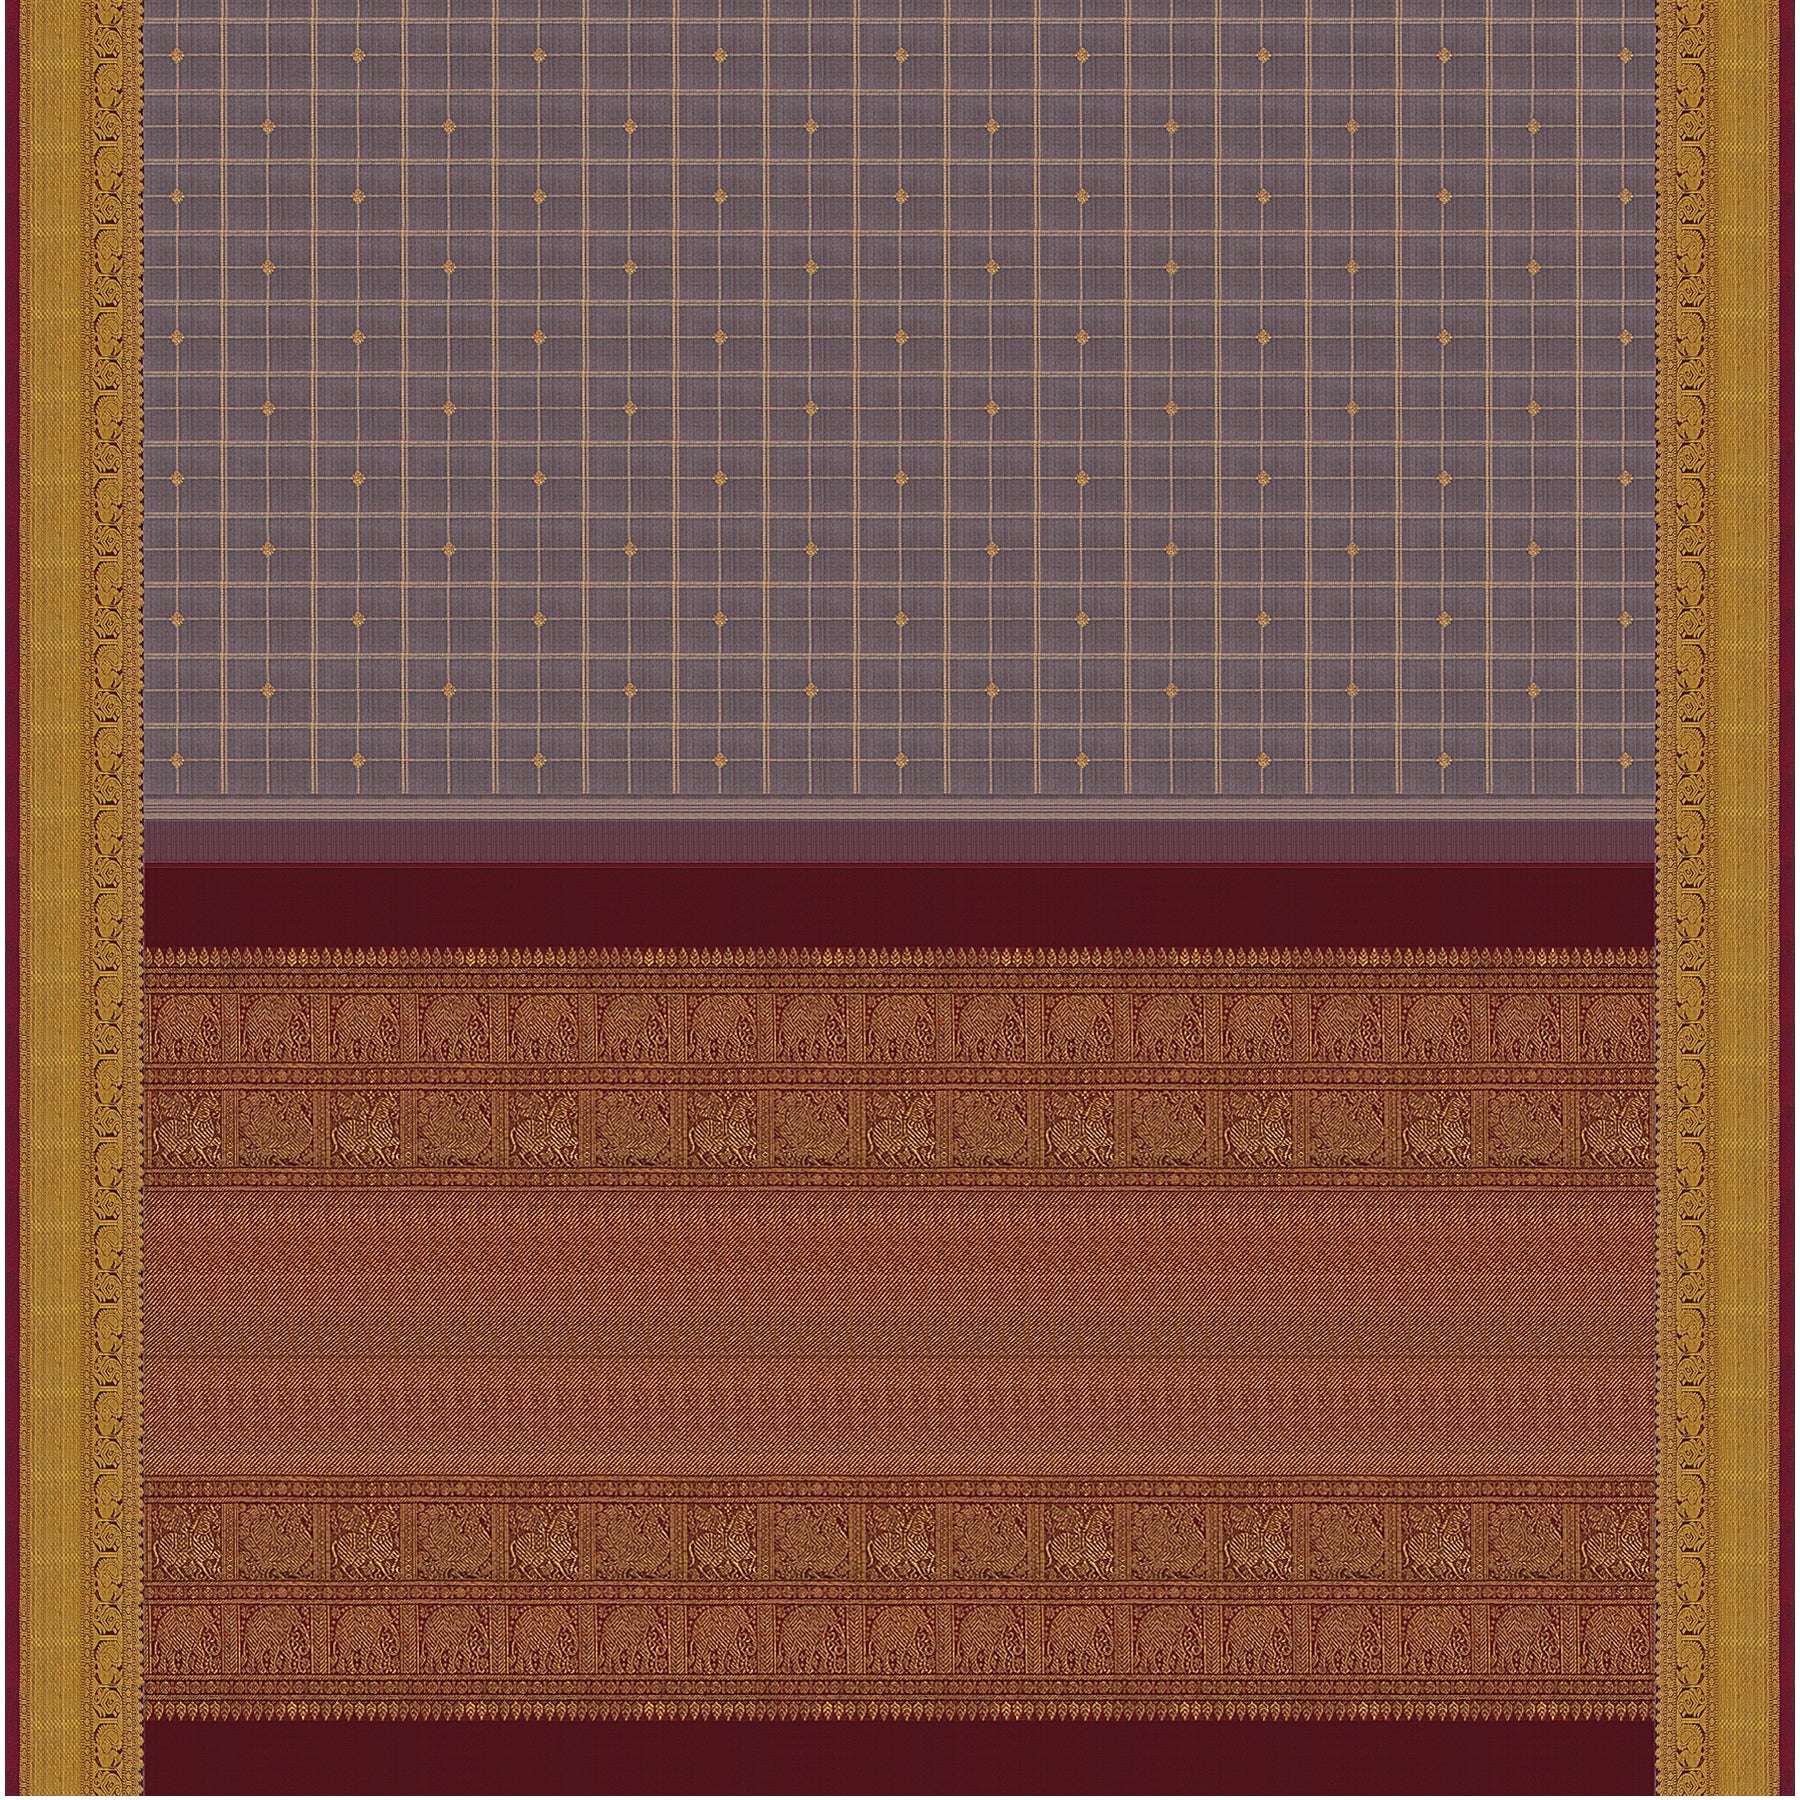 Kanakavalli Kanjivaram Silk Sari 23-599-HS001-13915 - Full View